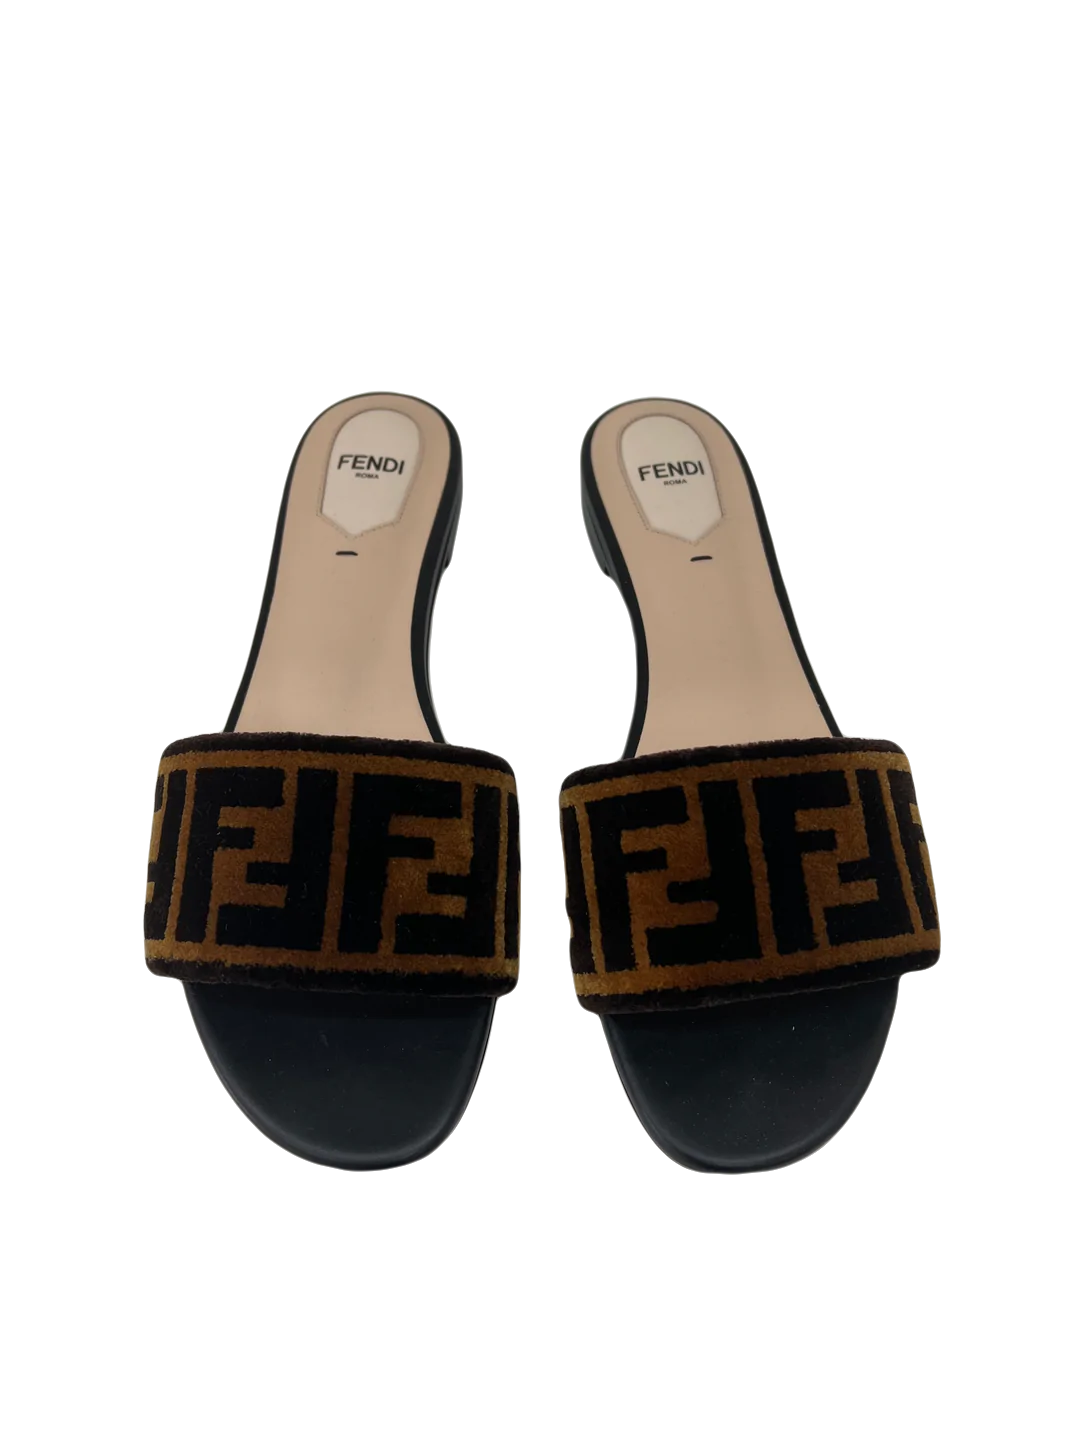 Fendi Slides - Size 38.5 - SOLD